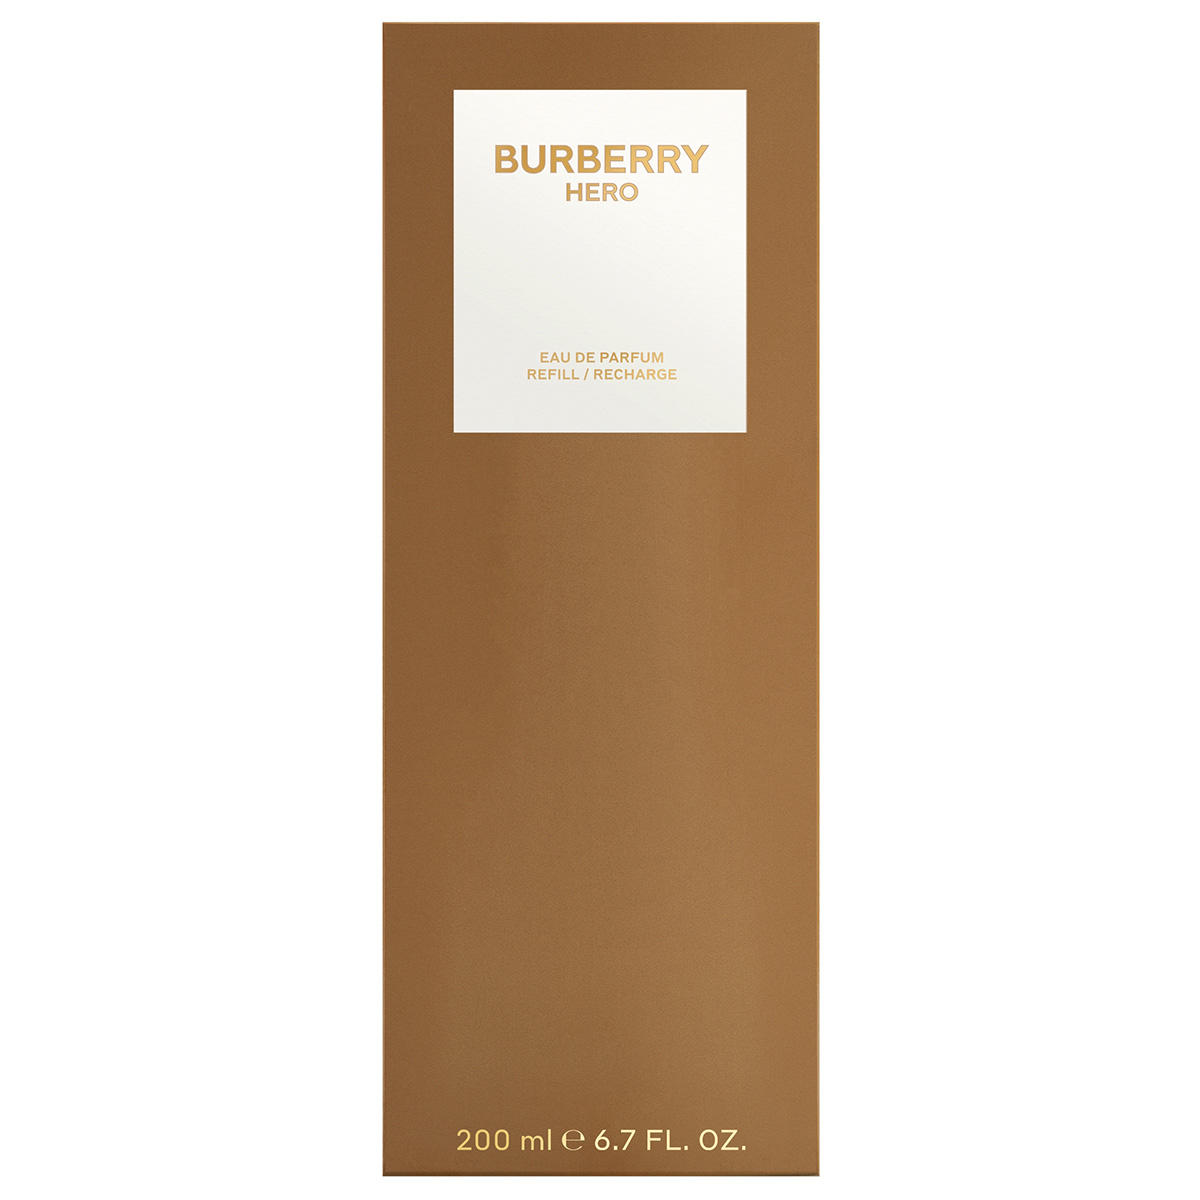 BURBERRY HERO Eau de Parfum Refill 200 ml - 2